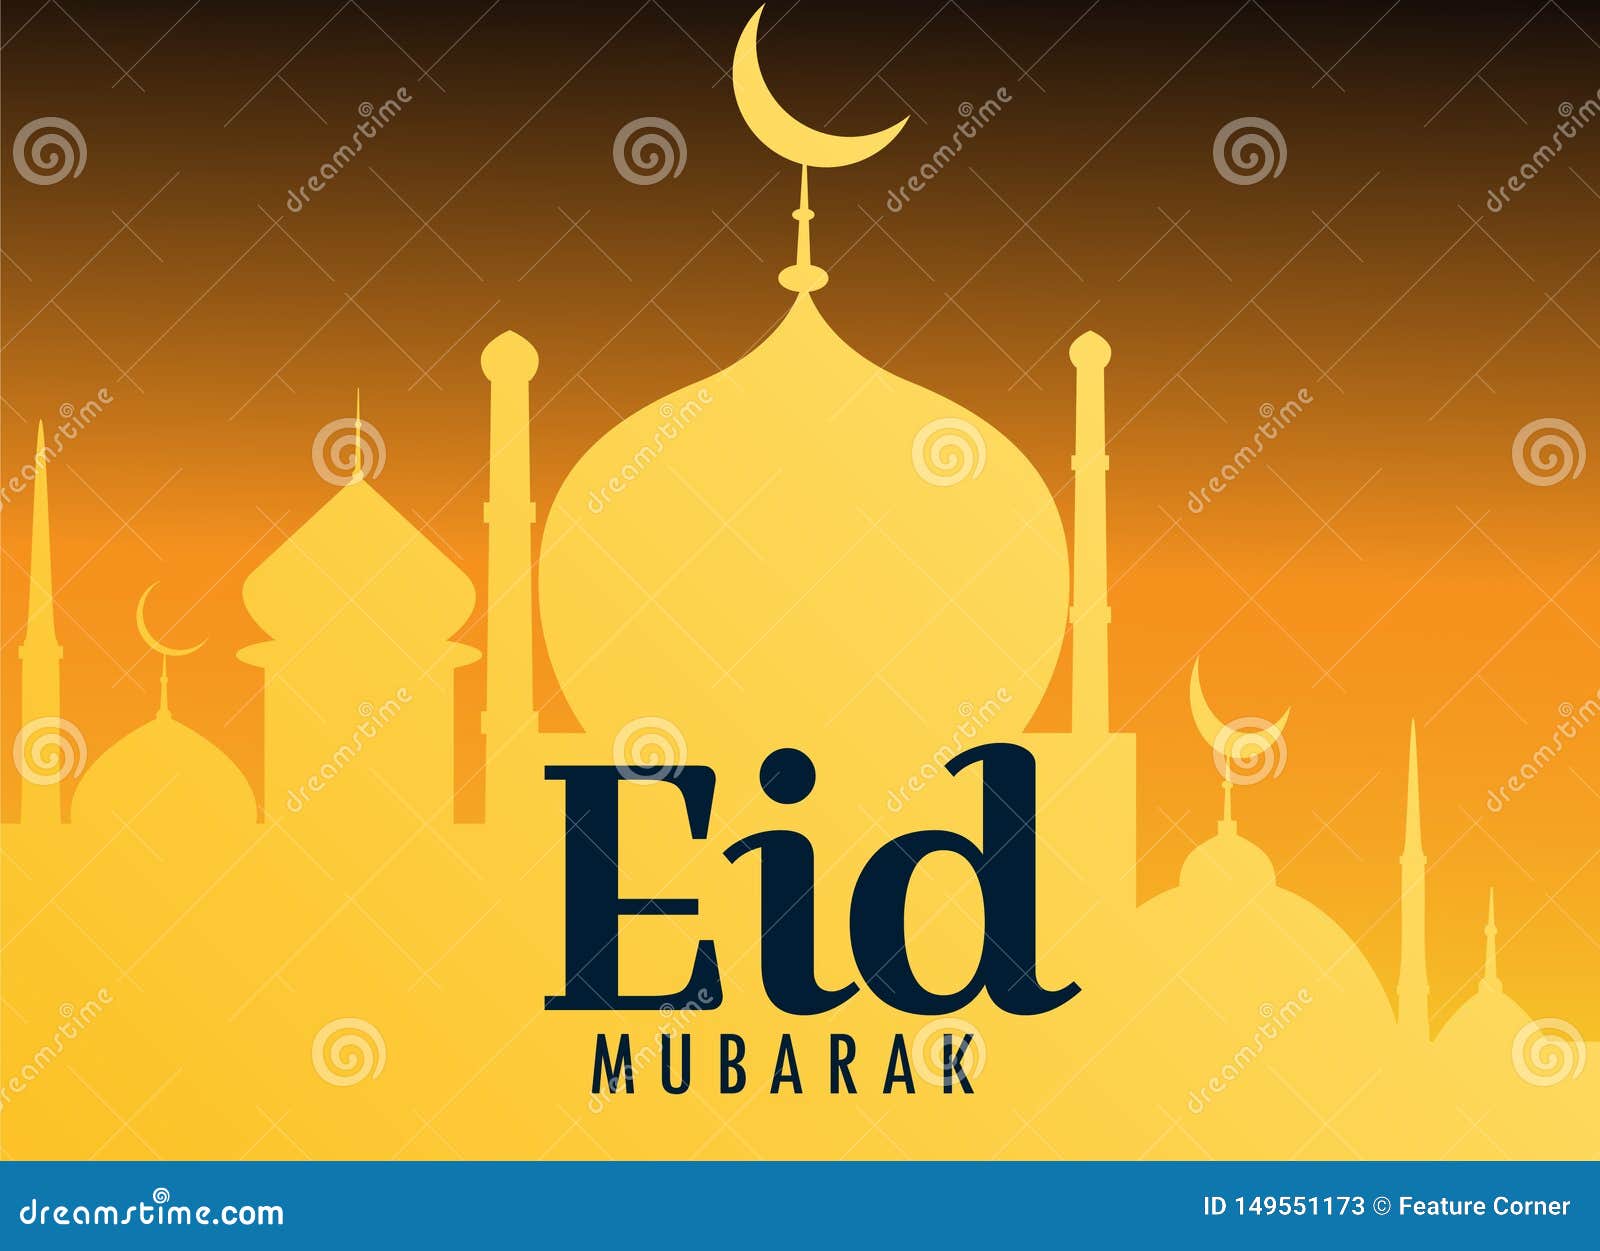 Những lời chúc mừng rực rỡ và sống động trên Eid Mubarak Greeting Card sẽ làm bạn cảm thấy ấm áp và hạnh phúc. Hãy xem những bức ảnh về chúng và chia sẻ cho những người thân yêu của bạn. 